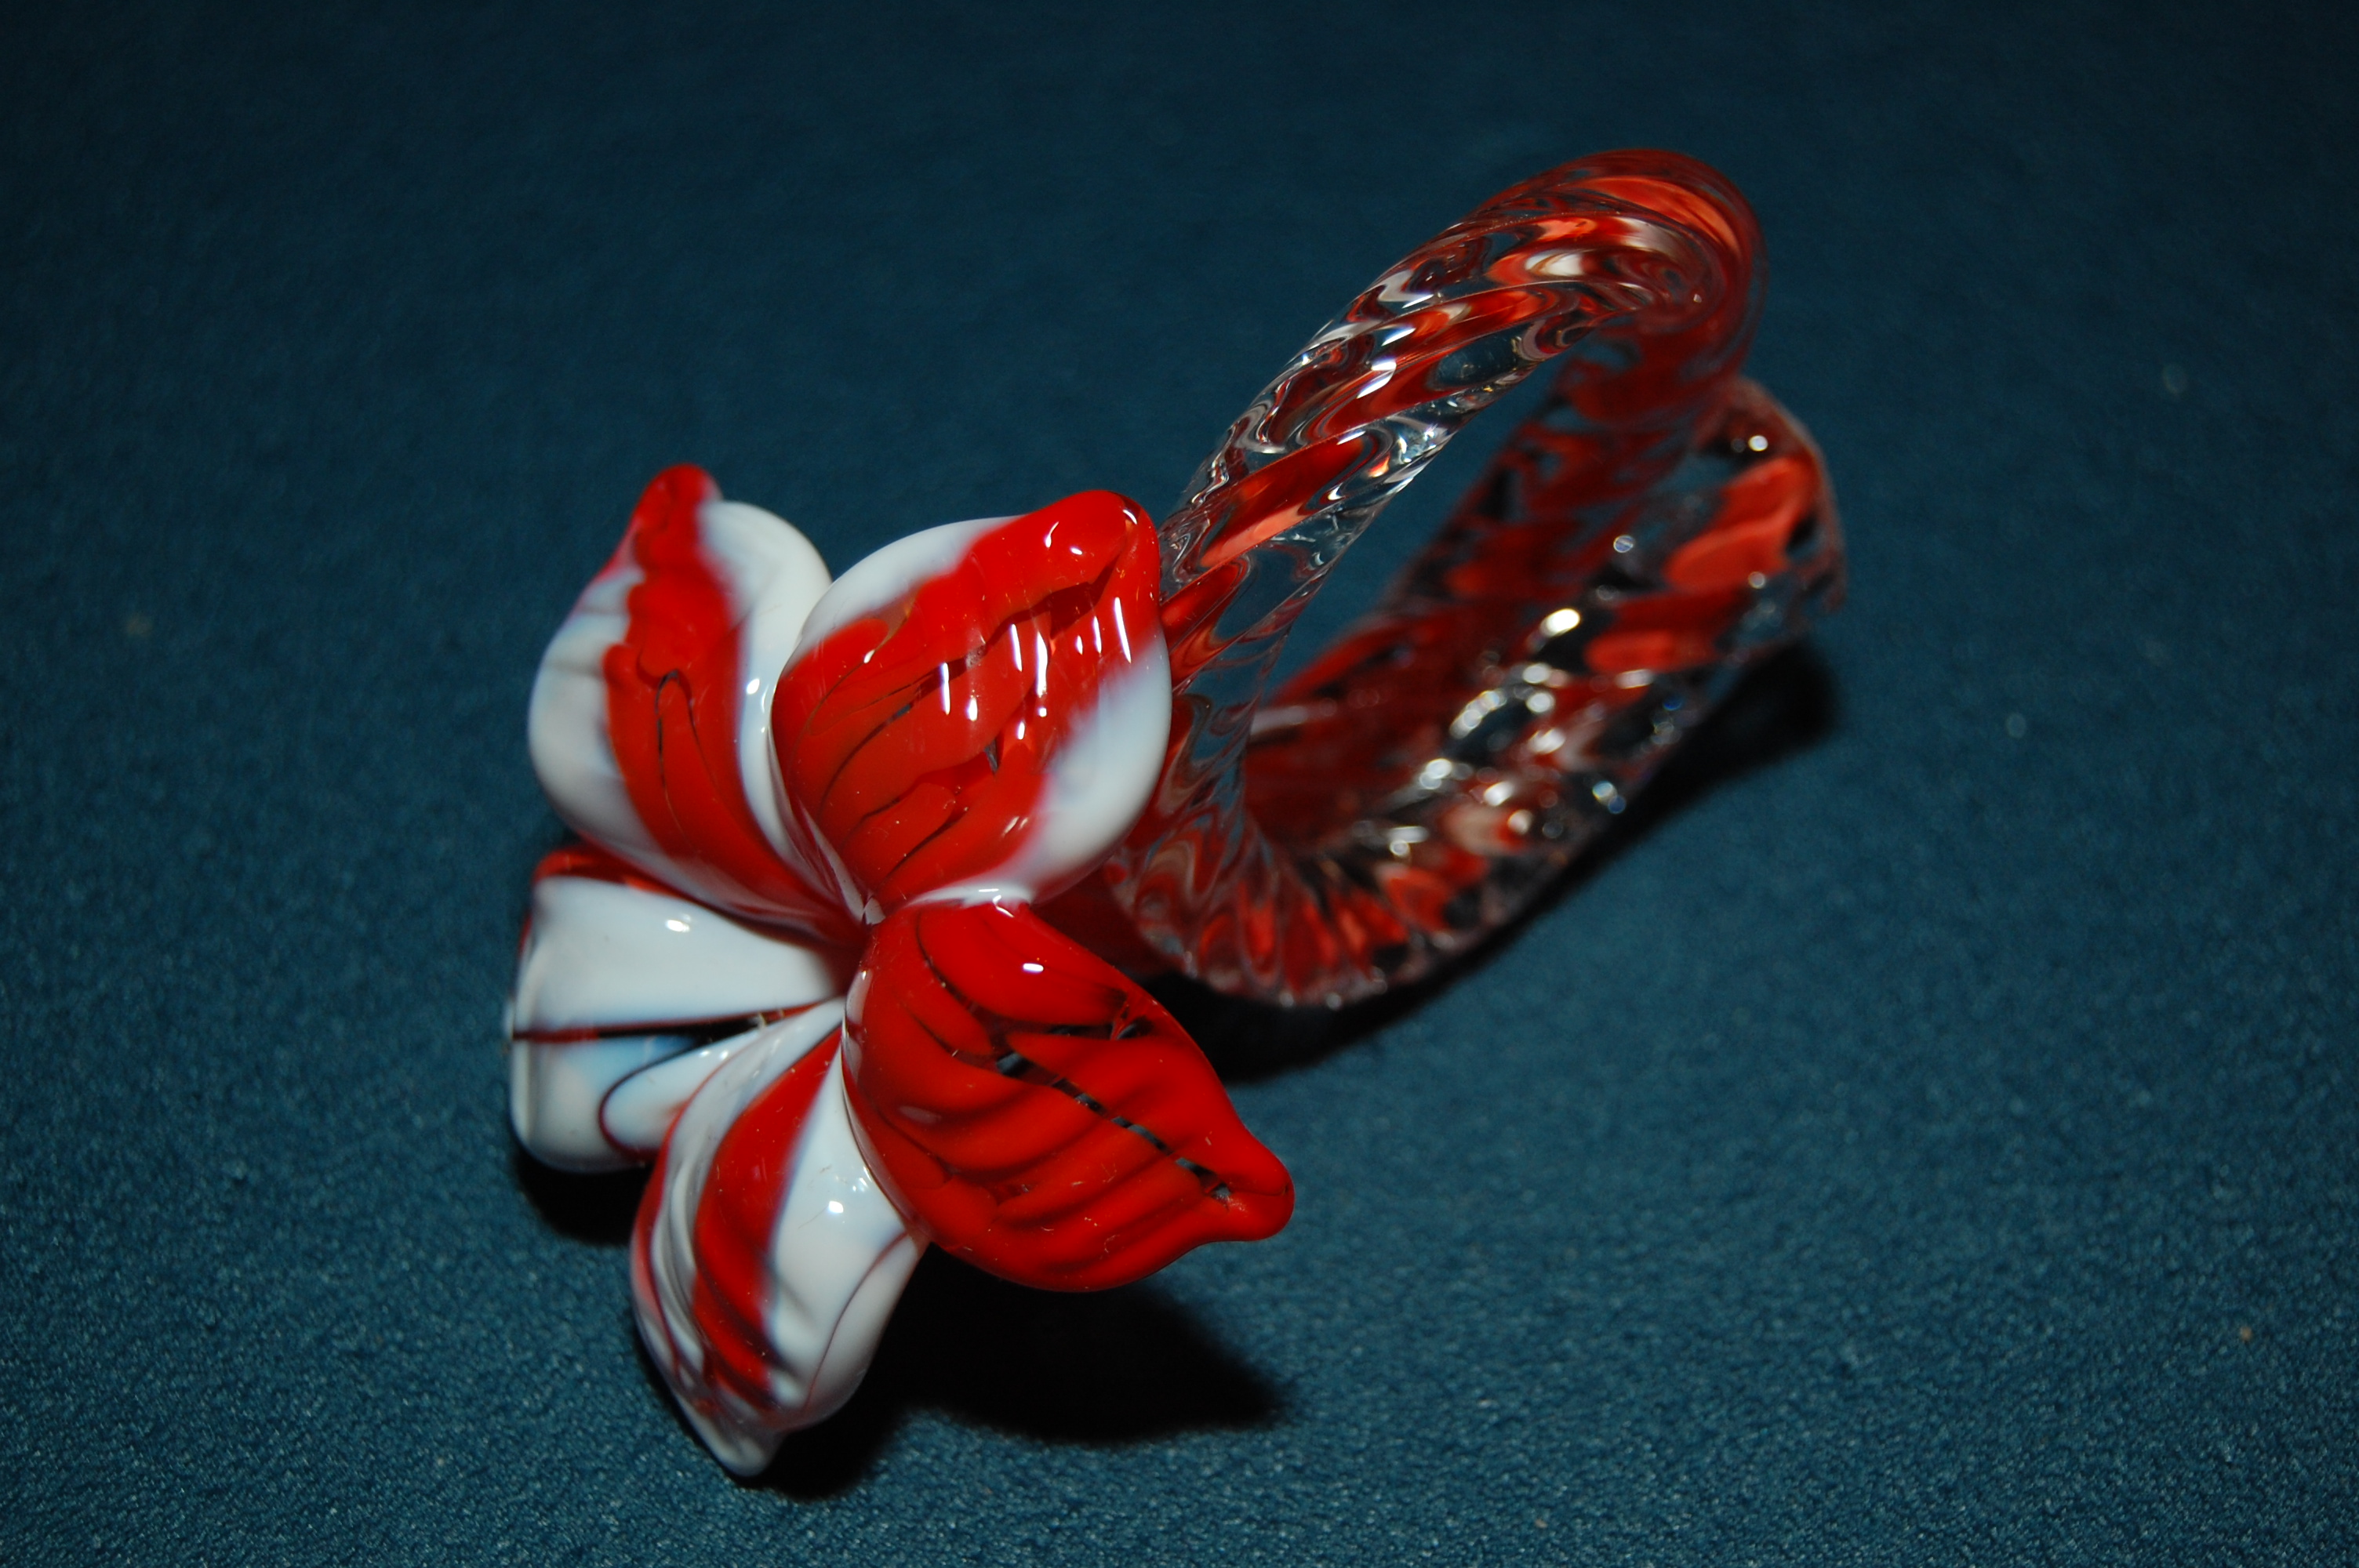 servetring in bloemvorm, rood/witte kleur